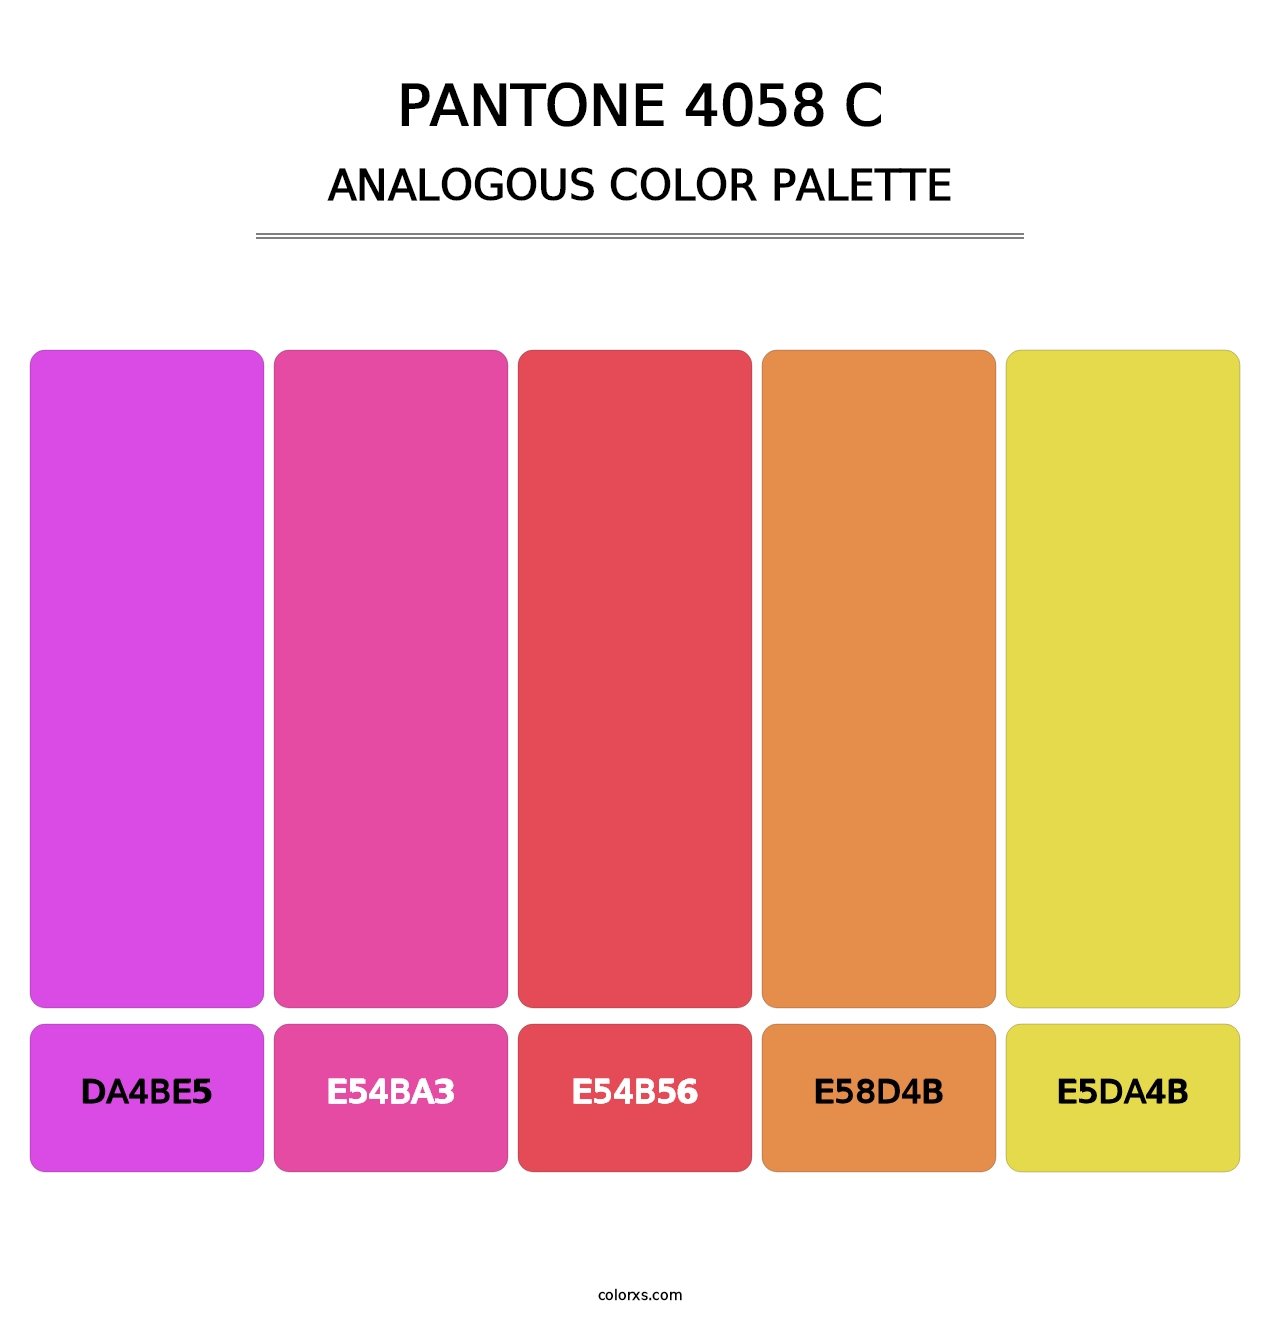 PANTONE 4058 C - Analogous Color Palette